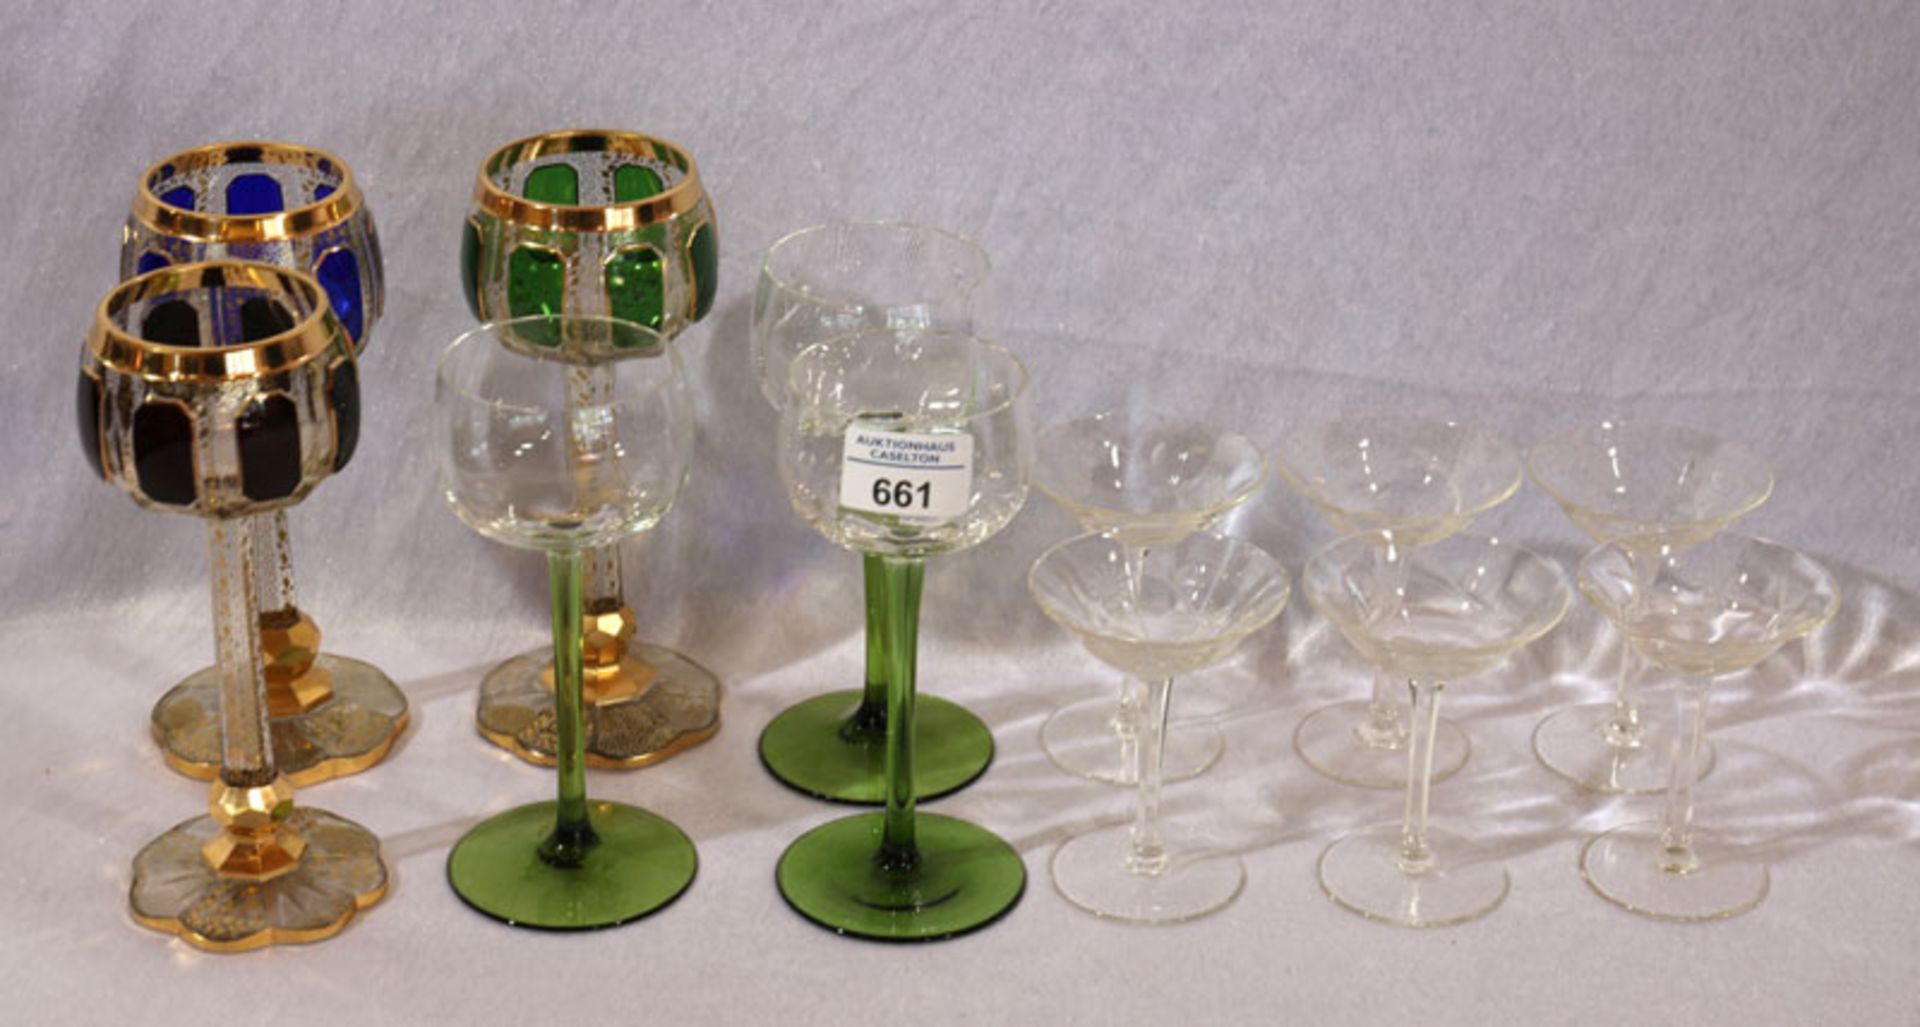 3 dekorative Weingläser mit reichen Golddekor, H 19 cm, 3 Weingläser mit grünem Stiel, H 17 cm, 6